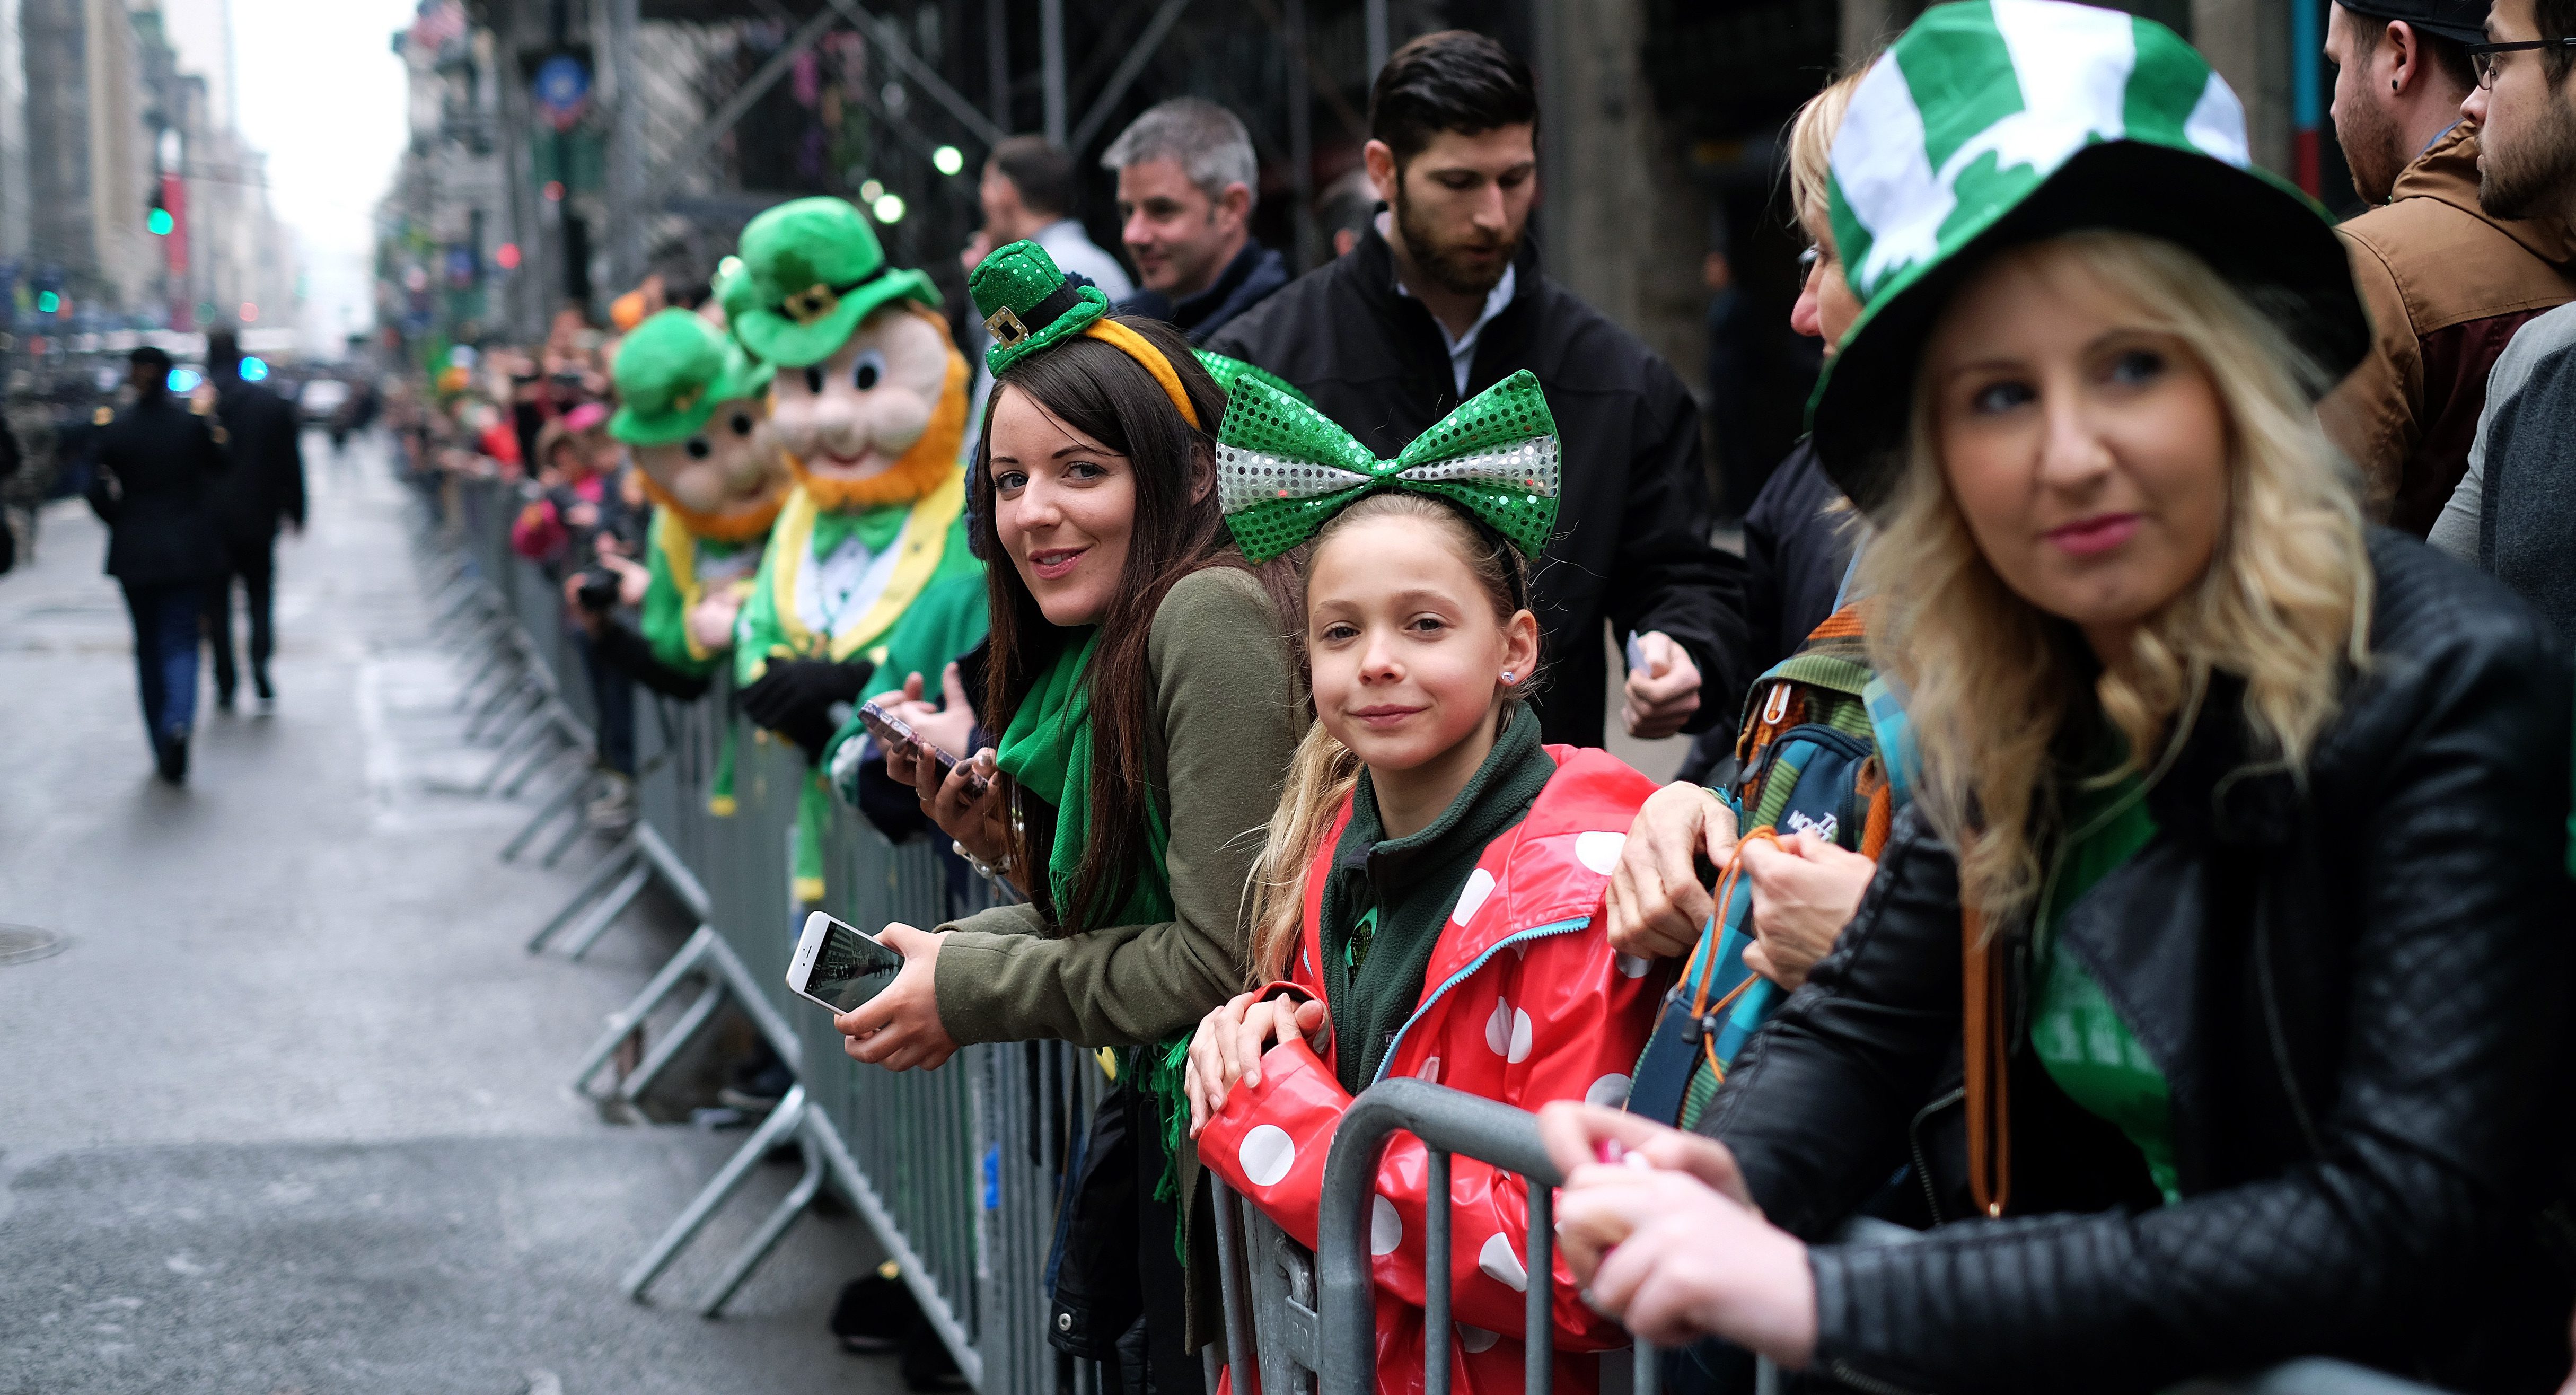 Have street parades. Фестиваль Святого Патрика в Лондоне. Ирландцы в Лондоне. Стрит парад. Ирландцы в повседневной жизни.